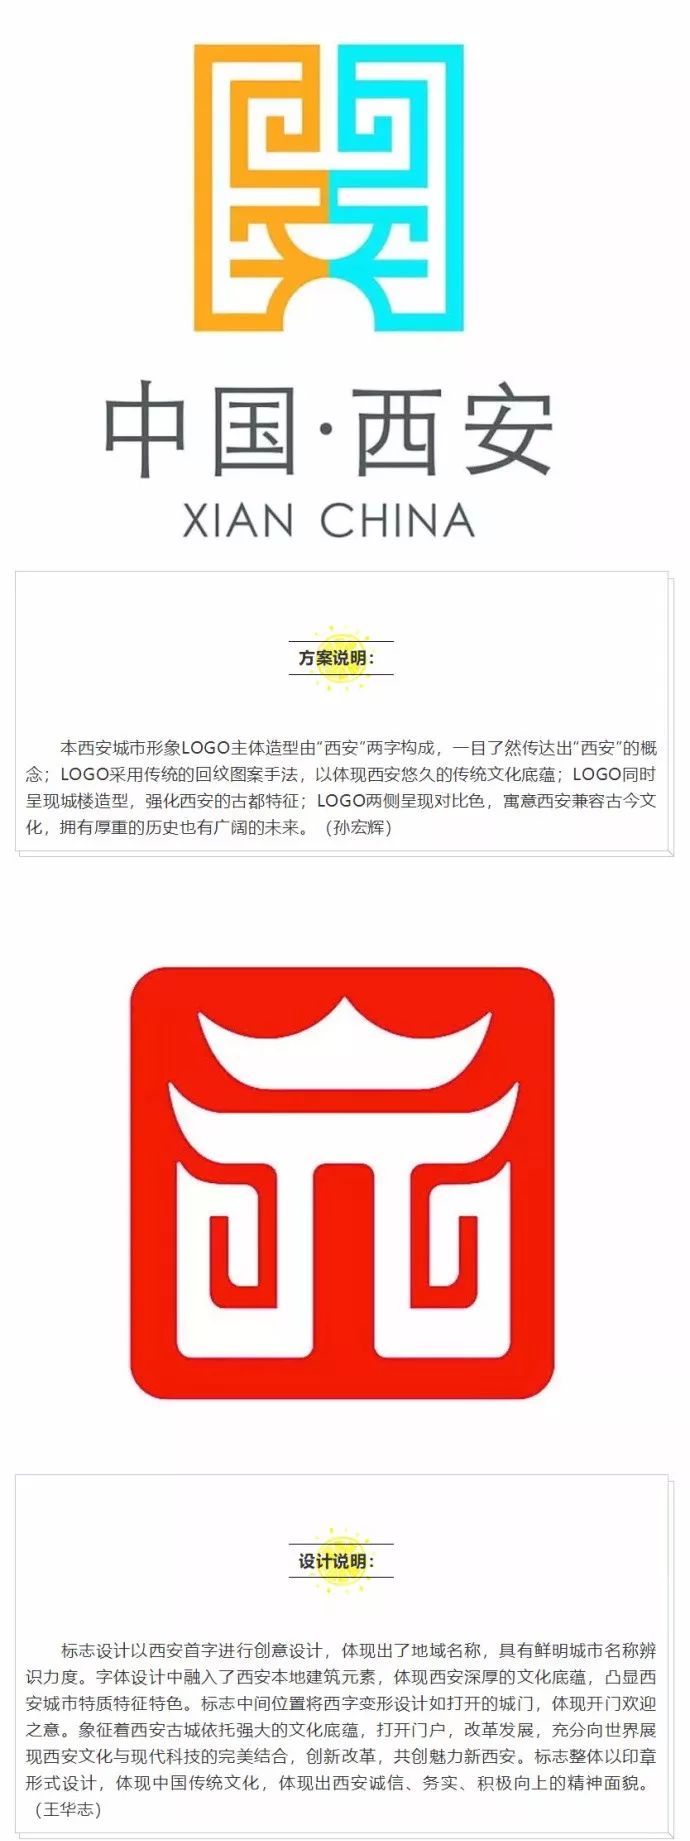 西安城市logo获奖方案揭晓你支持哪一个